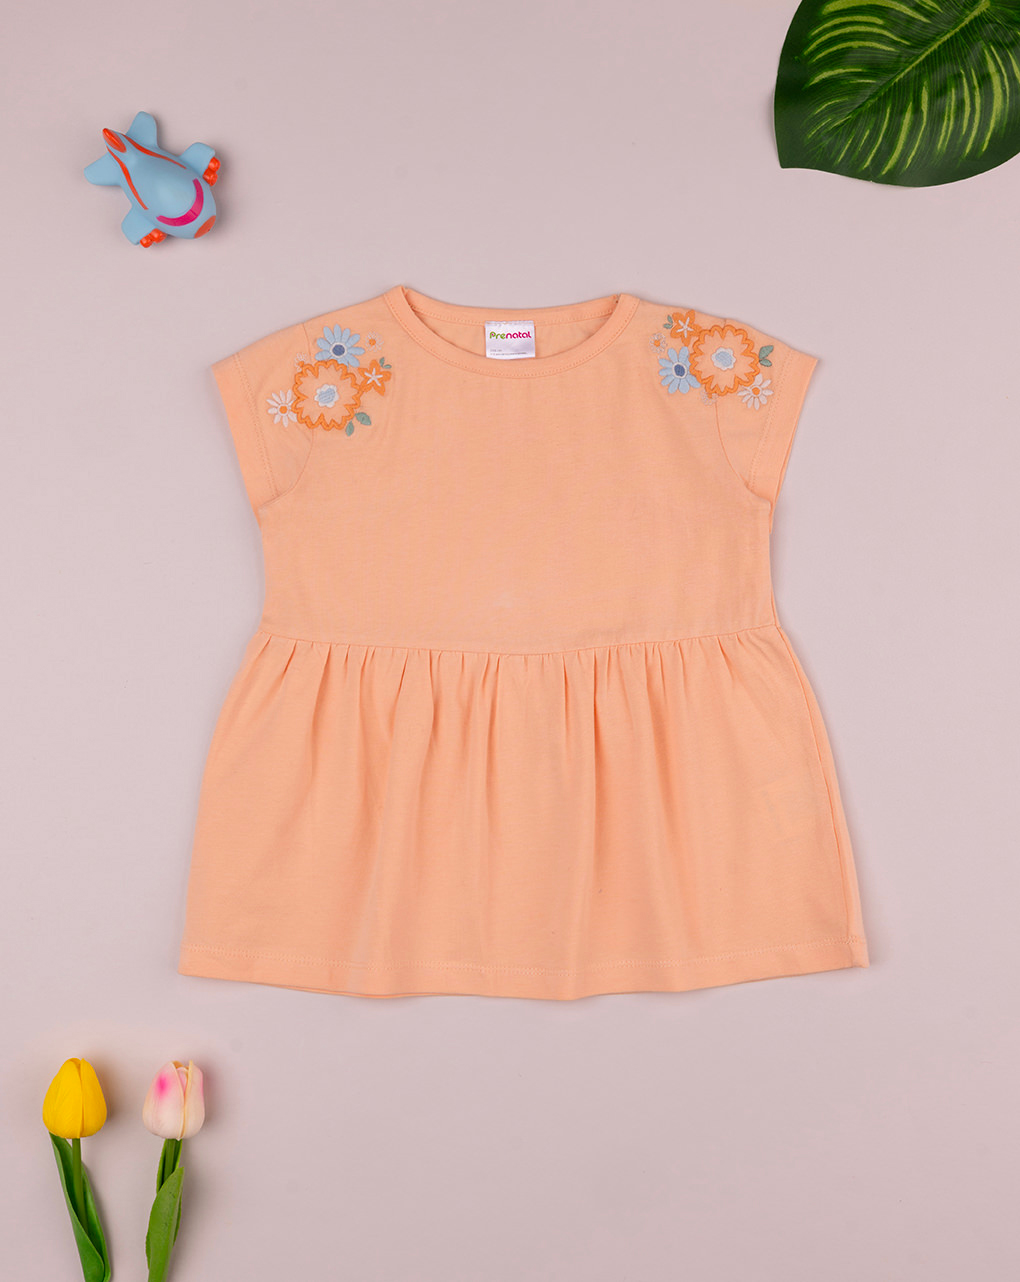 παιδικό t-shirt πορτοκαλί με λουλούδια για κορίτσι